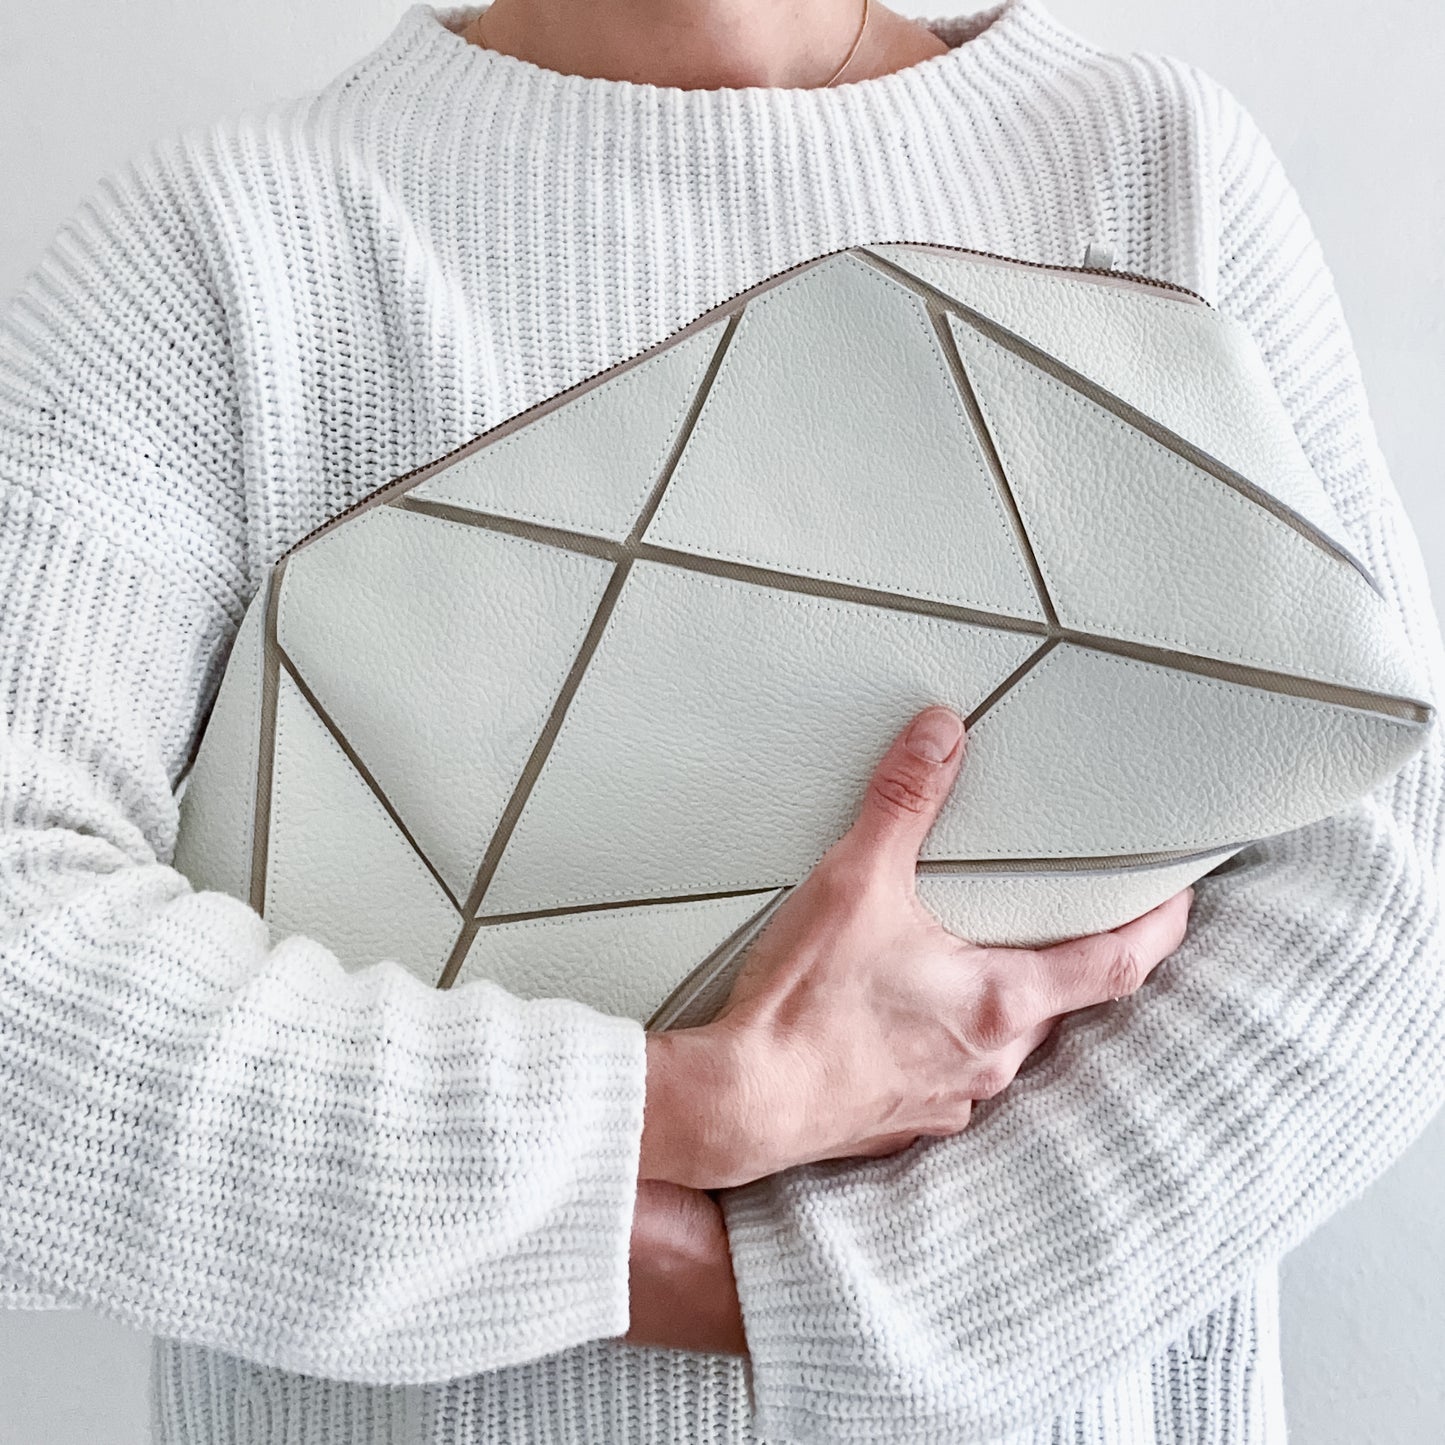 Foldable clutch Origami Bag by lara kazis